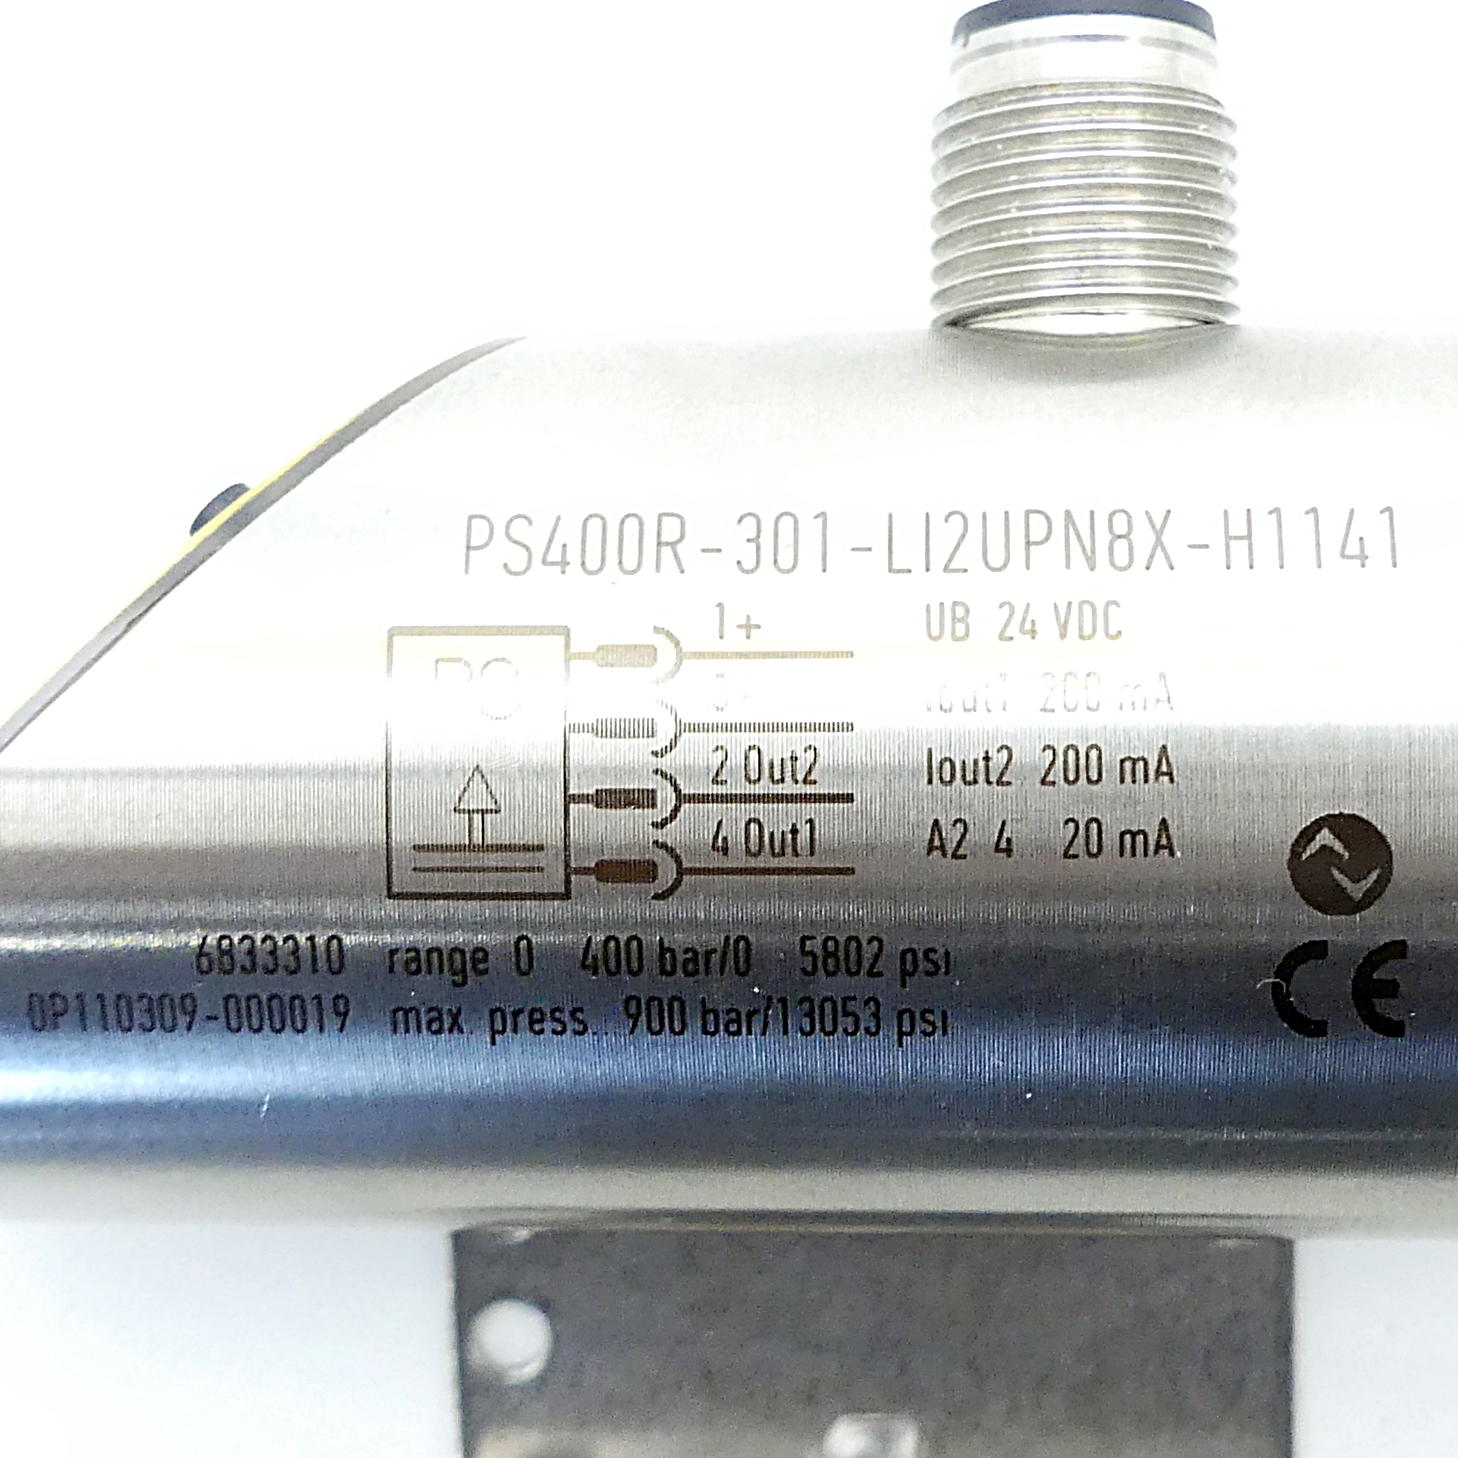 Drucksensor PS400R-301-LI2UPN8X-H1141 